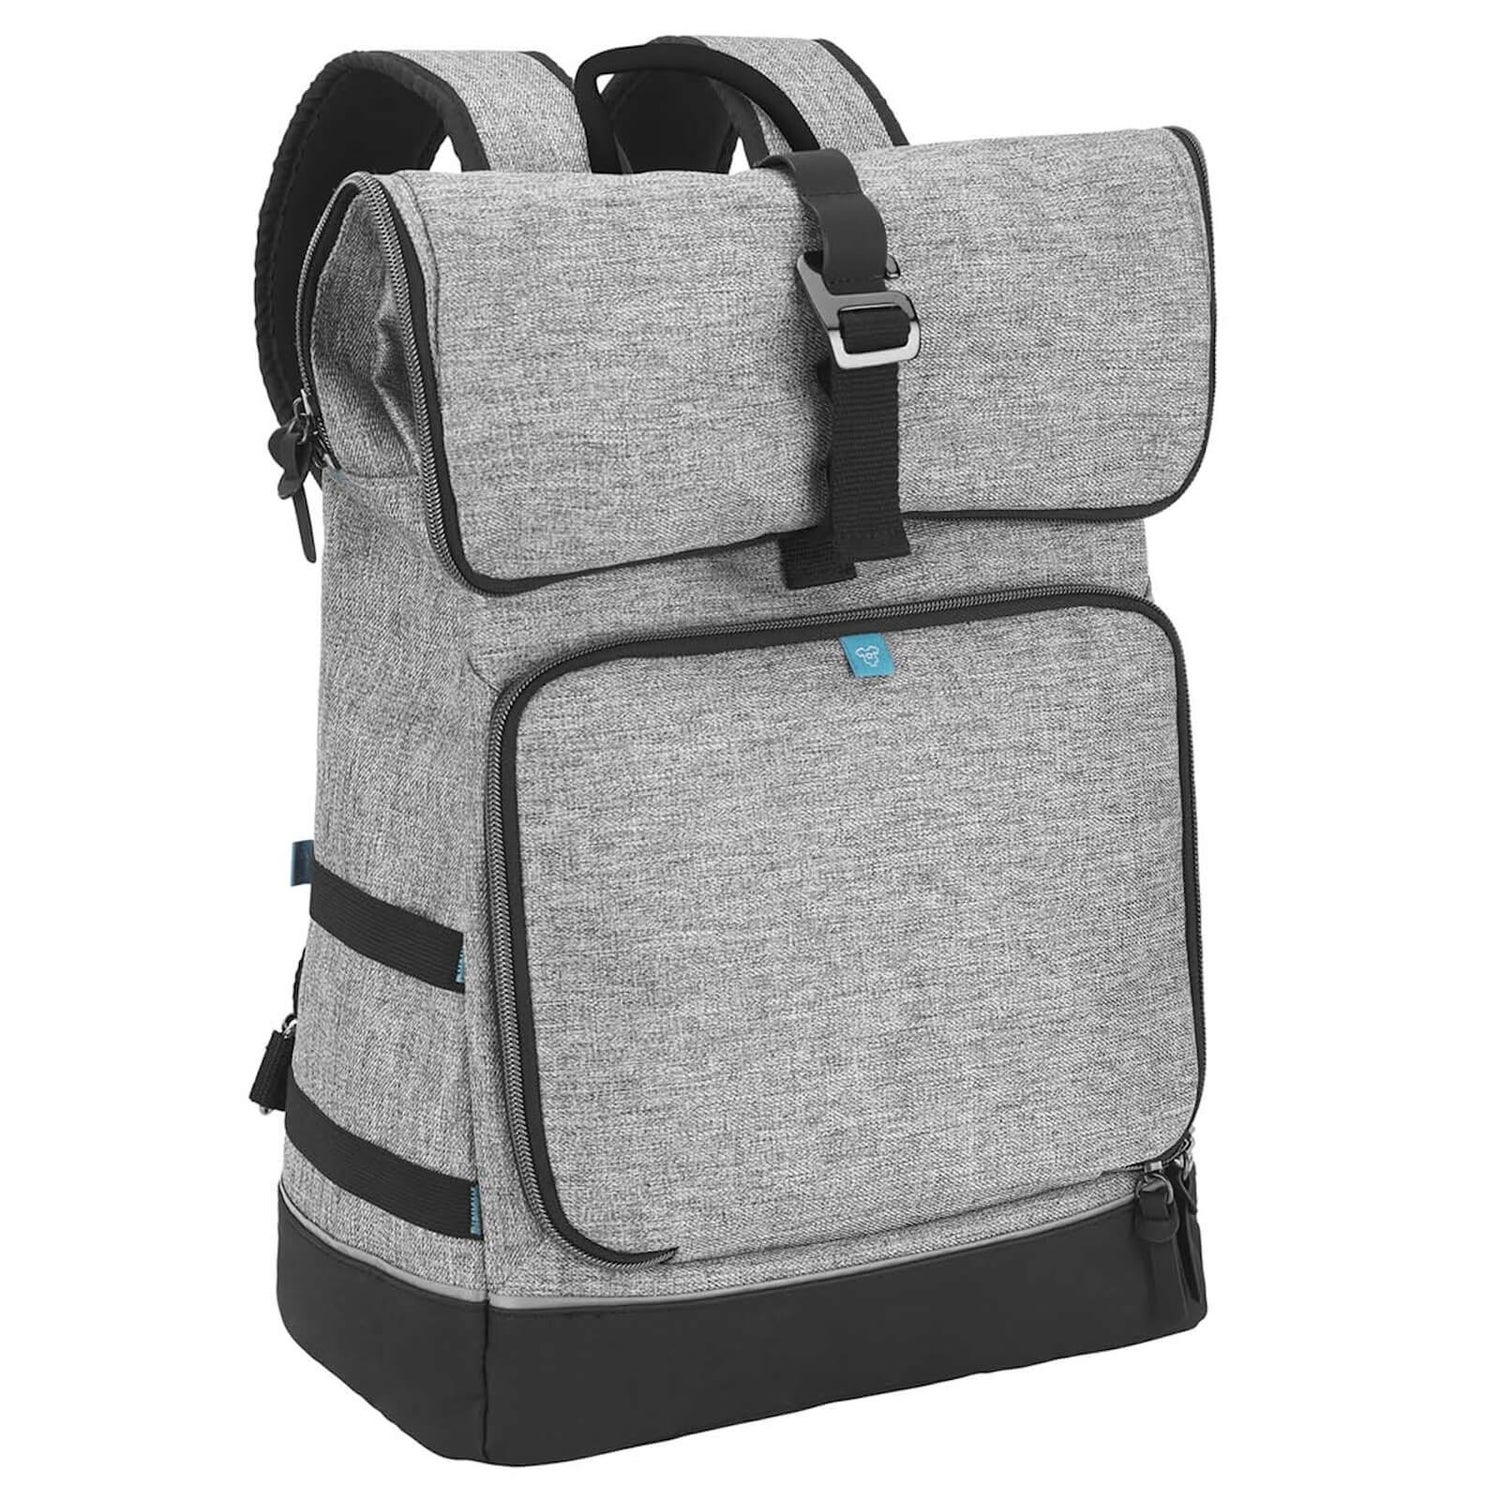 Babymoov Le Sancy Backpack Changing Bag - Grey